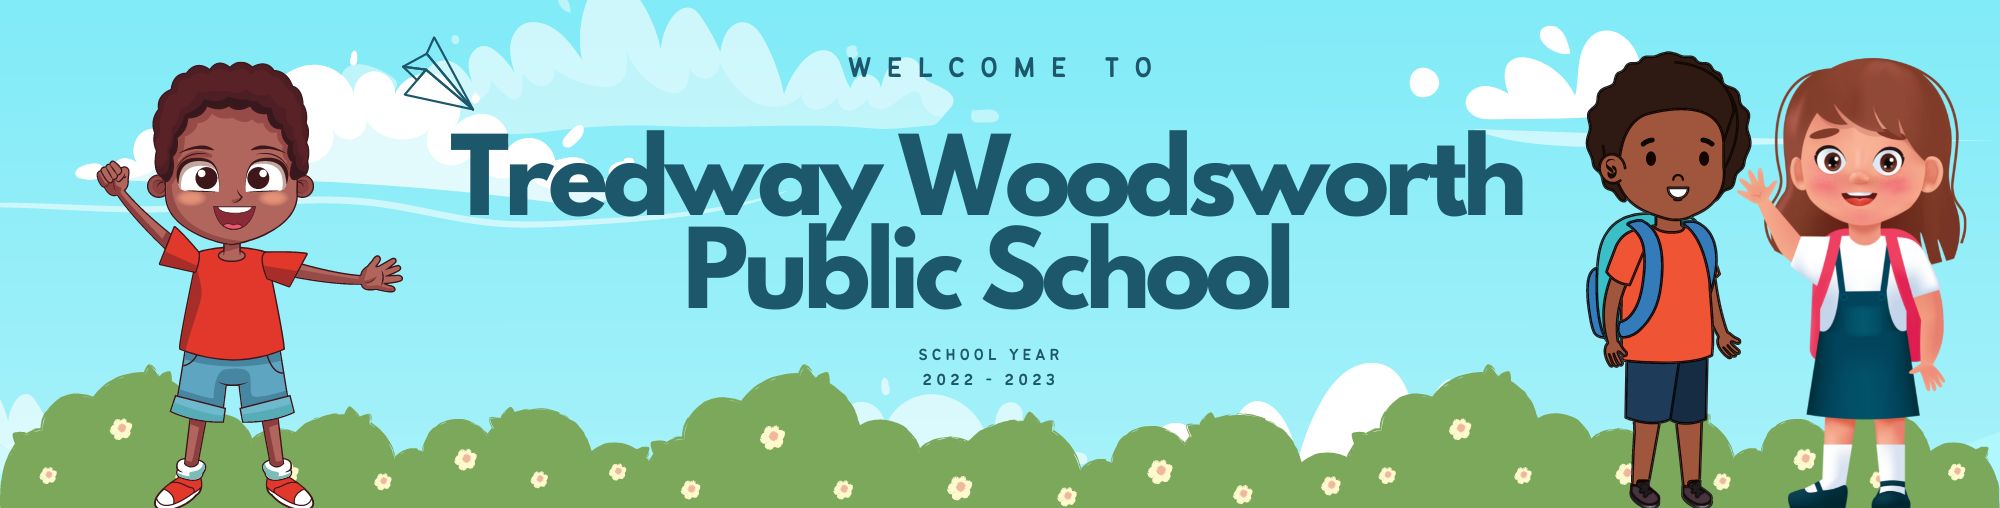 Tredway Woodsworth Public School (1)638019950204847767